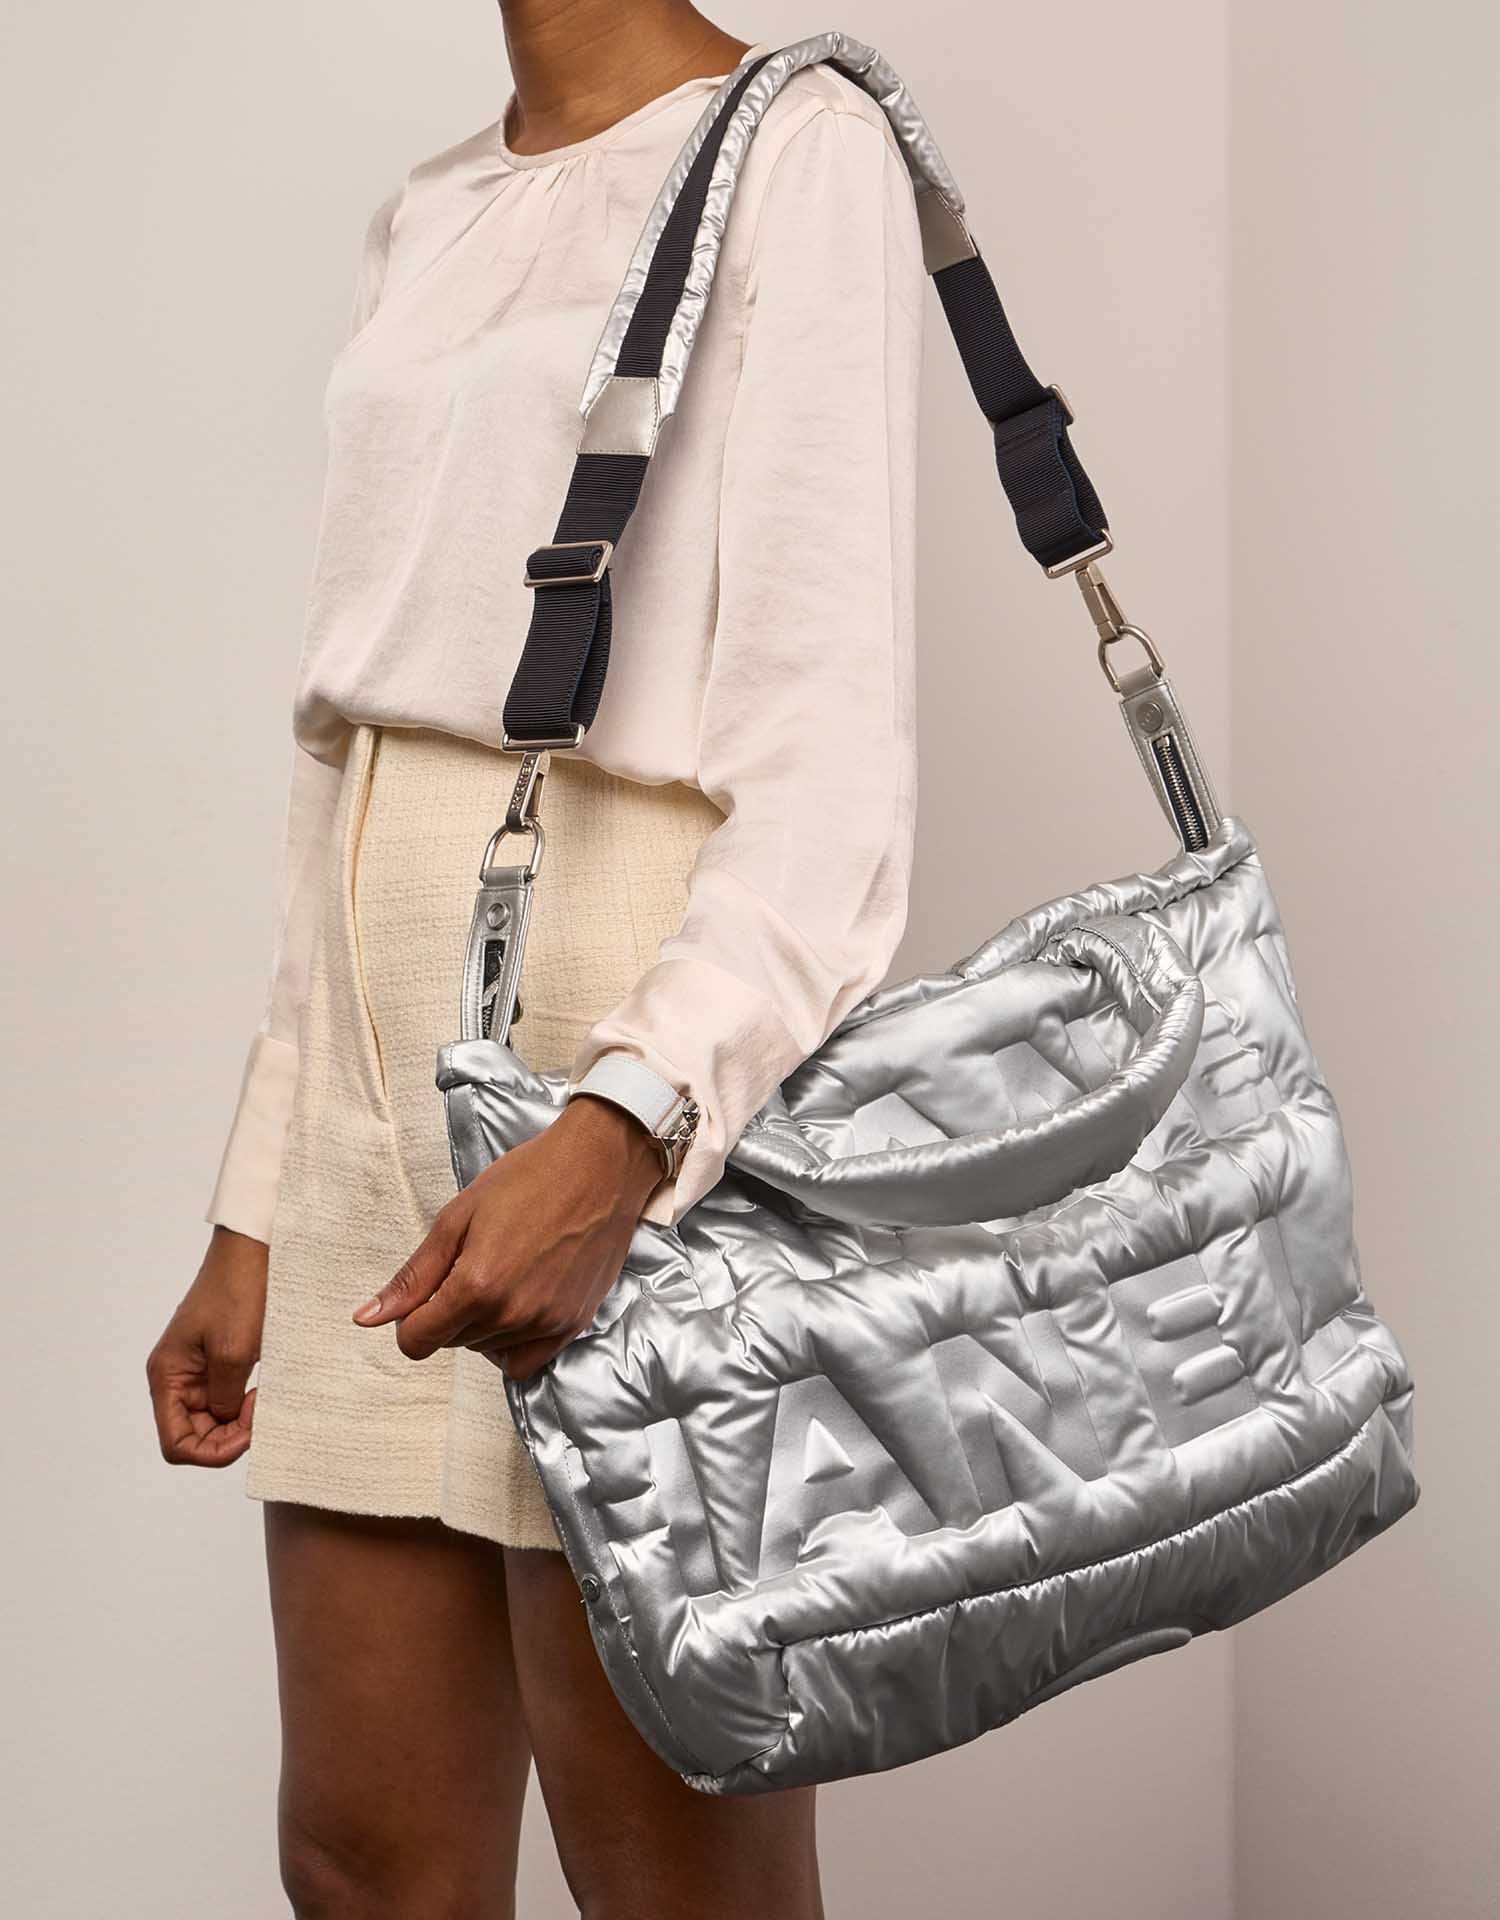 Chanel ShoppingTote Silver Sizes Worn | Verkaufen Sie Ihre Designer-Tasche auf Saclab.com